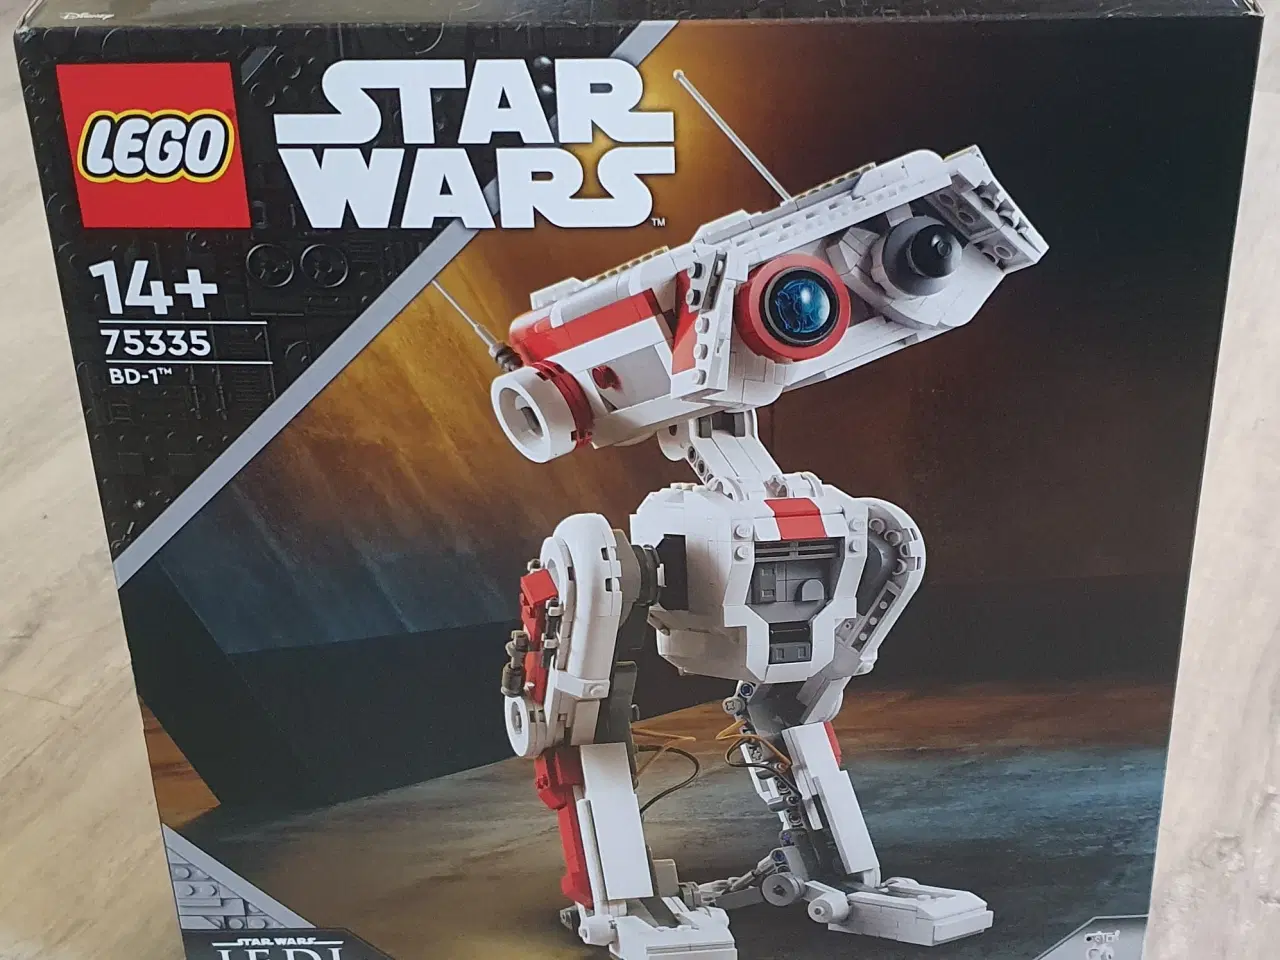 Billede 1 - Lego Star Wars, BD-1, 75335